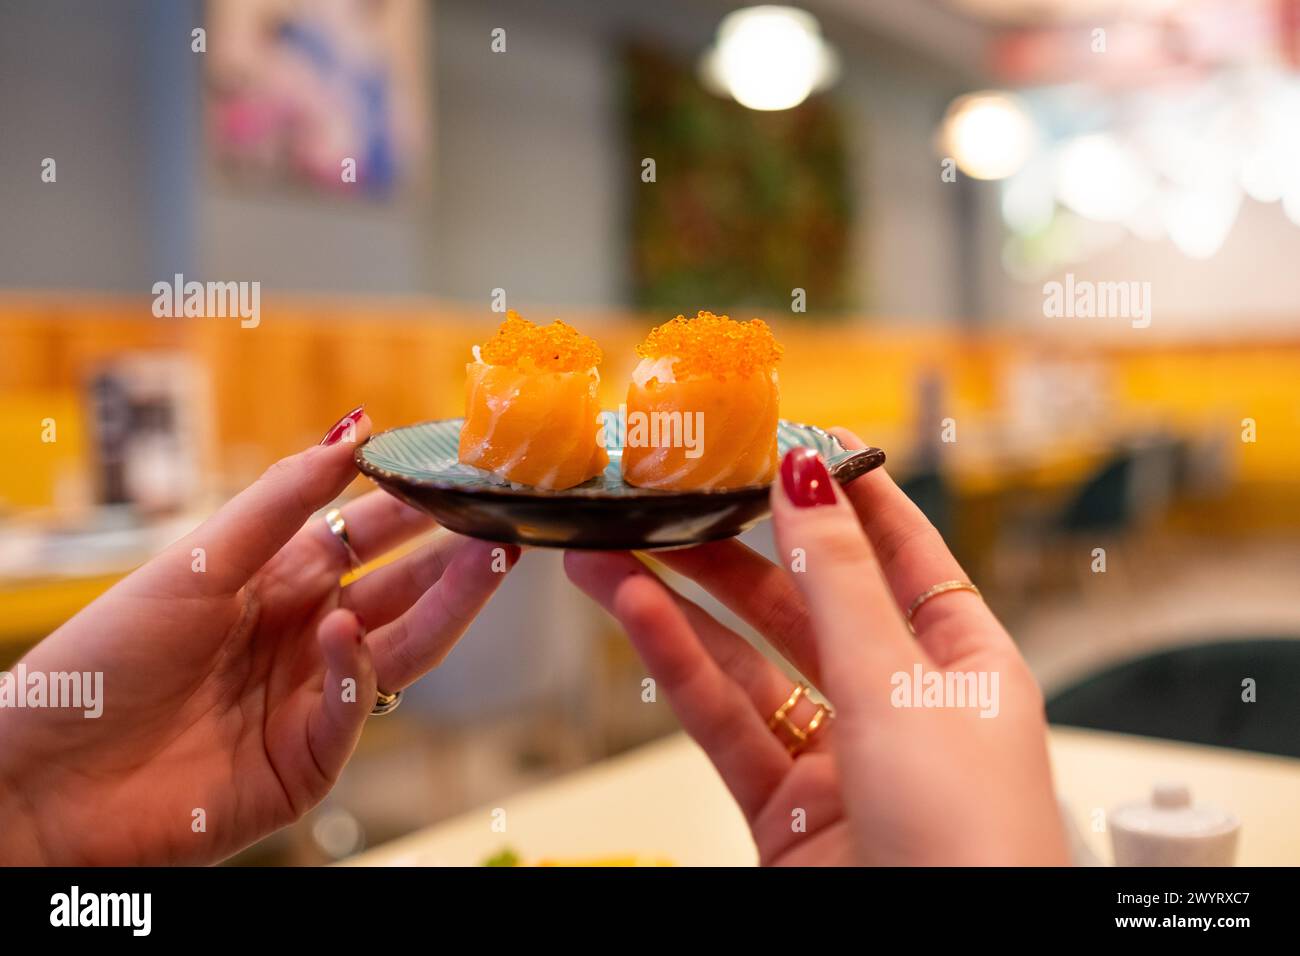 Eine Hand hält einen kleinen Teller mit zwei Lachs-Maki-Rollen vor einem warmen und farbenfrohen japanischen Restaurant vor der Kulisse. Das Bokeh und die Hintergrundunschärfe sind sehr Stockfoto